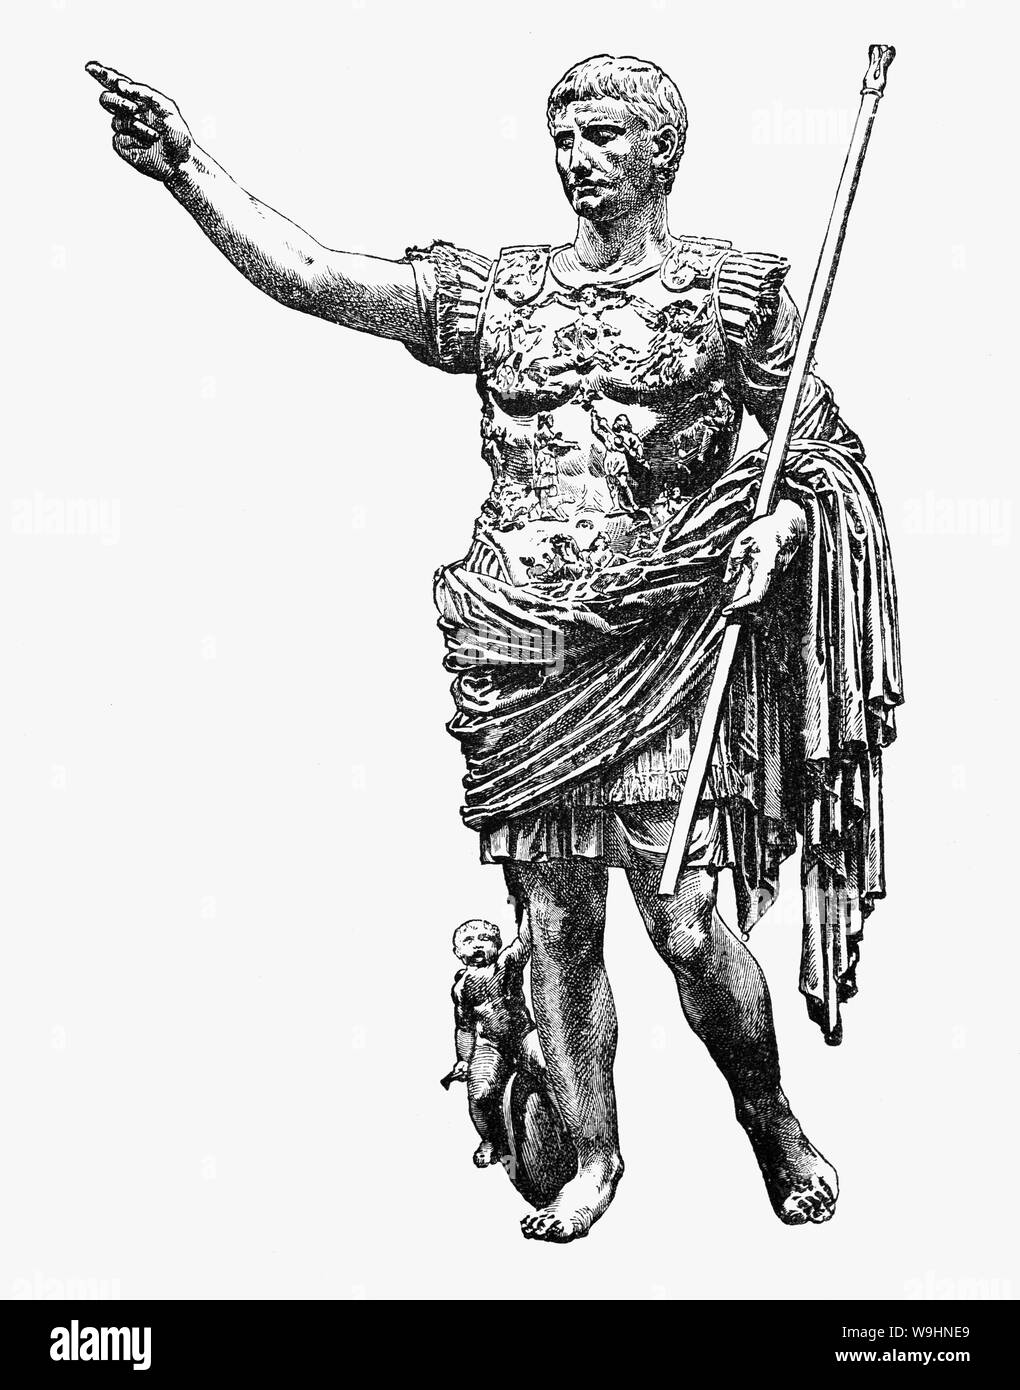 Augustus (63 V.CHR. - 14 N.CHR.), römischer Staatsmann und Heerführer war der erste Kaiser des römischen Reiches, Regierende von 27 v. Chr. bis zu seinem Tod im AD 14. Seinen Status als Gründer der Roman Principate konsolidierte ein bleibendes Vermächtnis als eine der effektivsten und umstrittenen Regierungschefs in der Geschichte der Beginn einer Zeit des relativen Friedens bekannt als die Pax Romana, die mehr als zwei Jahrhunderte, trotz der ständigen Kriege der imperialen Expansion über die Grenzen des Reiches und der jahrelange Bürgerkrieg als "Jahr der vier Kaiser' über den kaiserlichen Nachfolge bekannt. Stockfoto